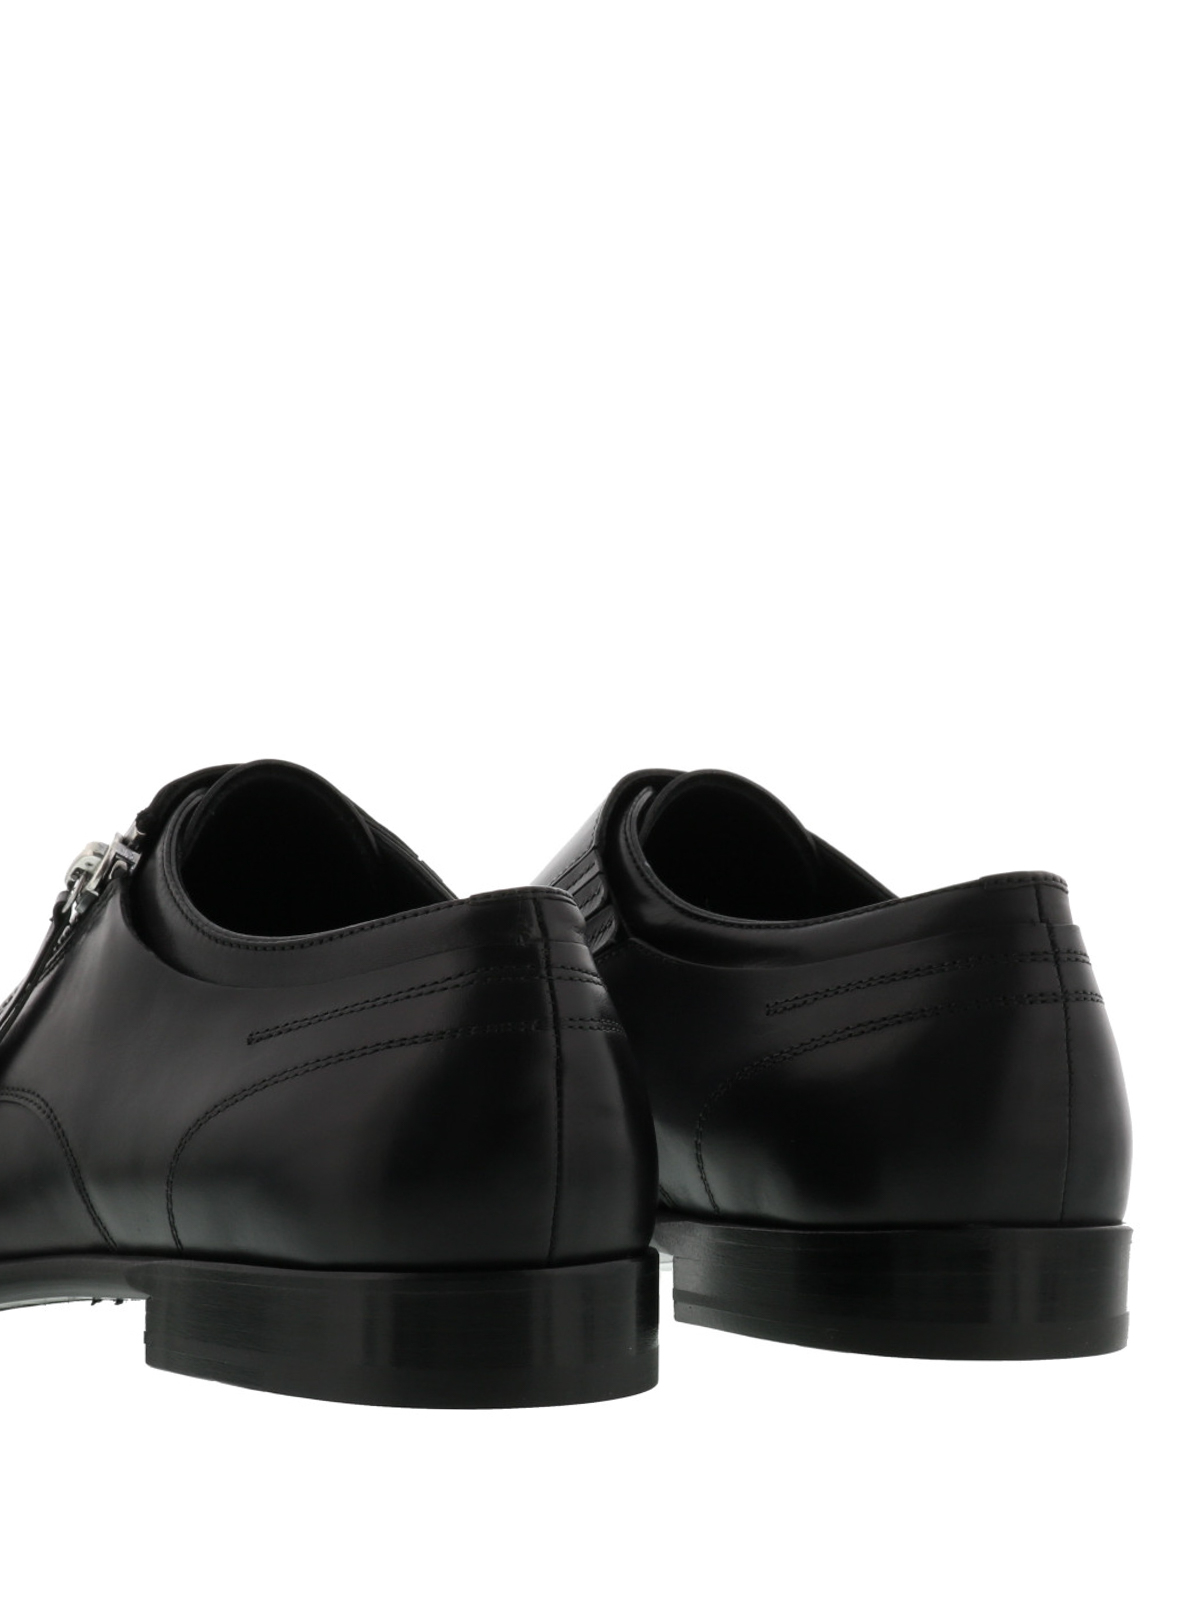 Alexander McQueen Black  Dress shoes men, Alexander mcqueen